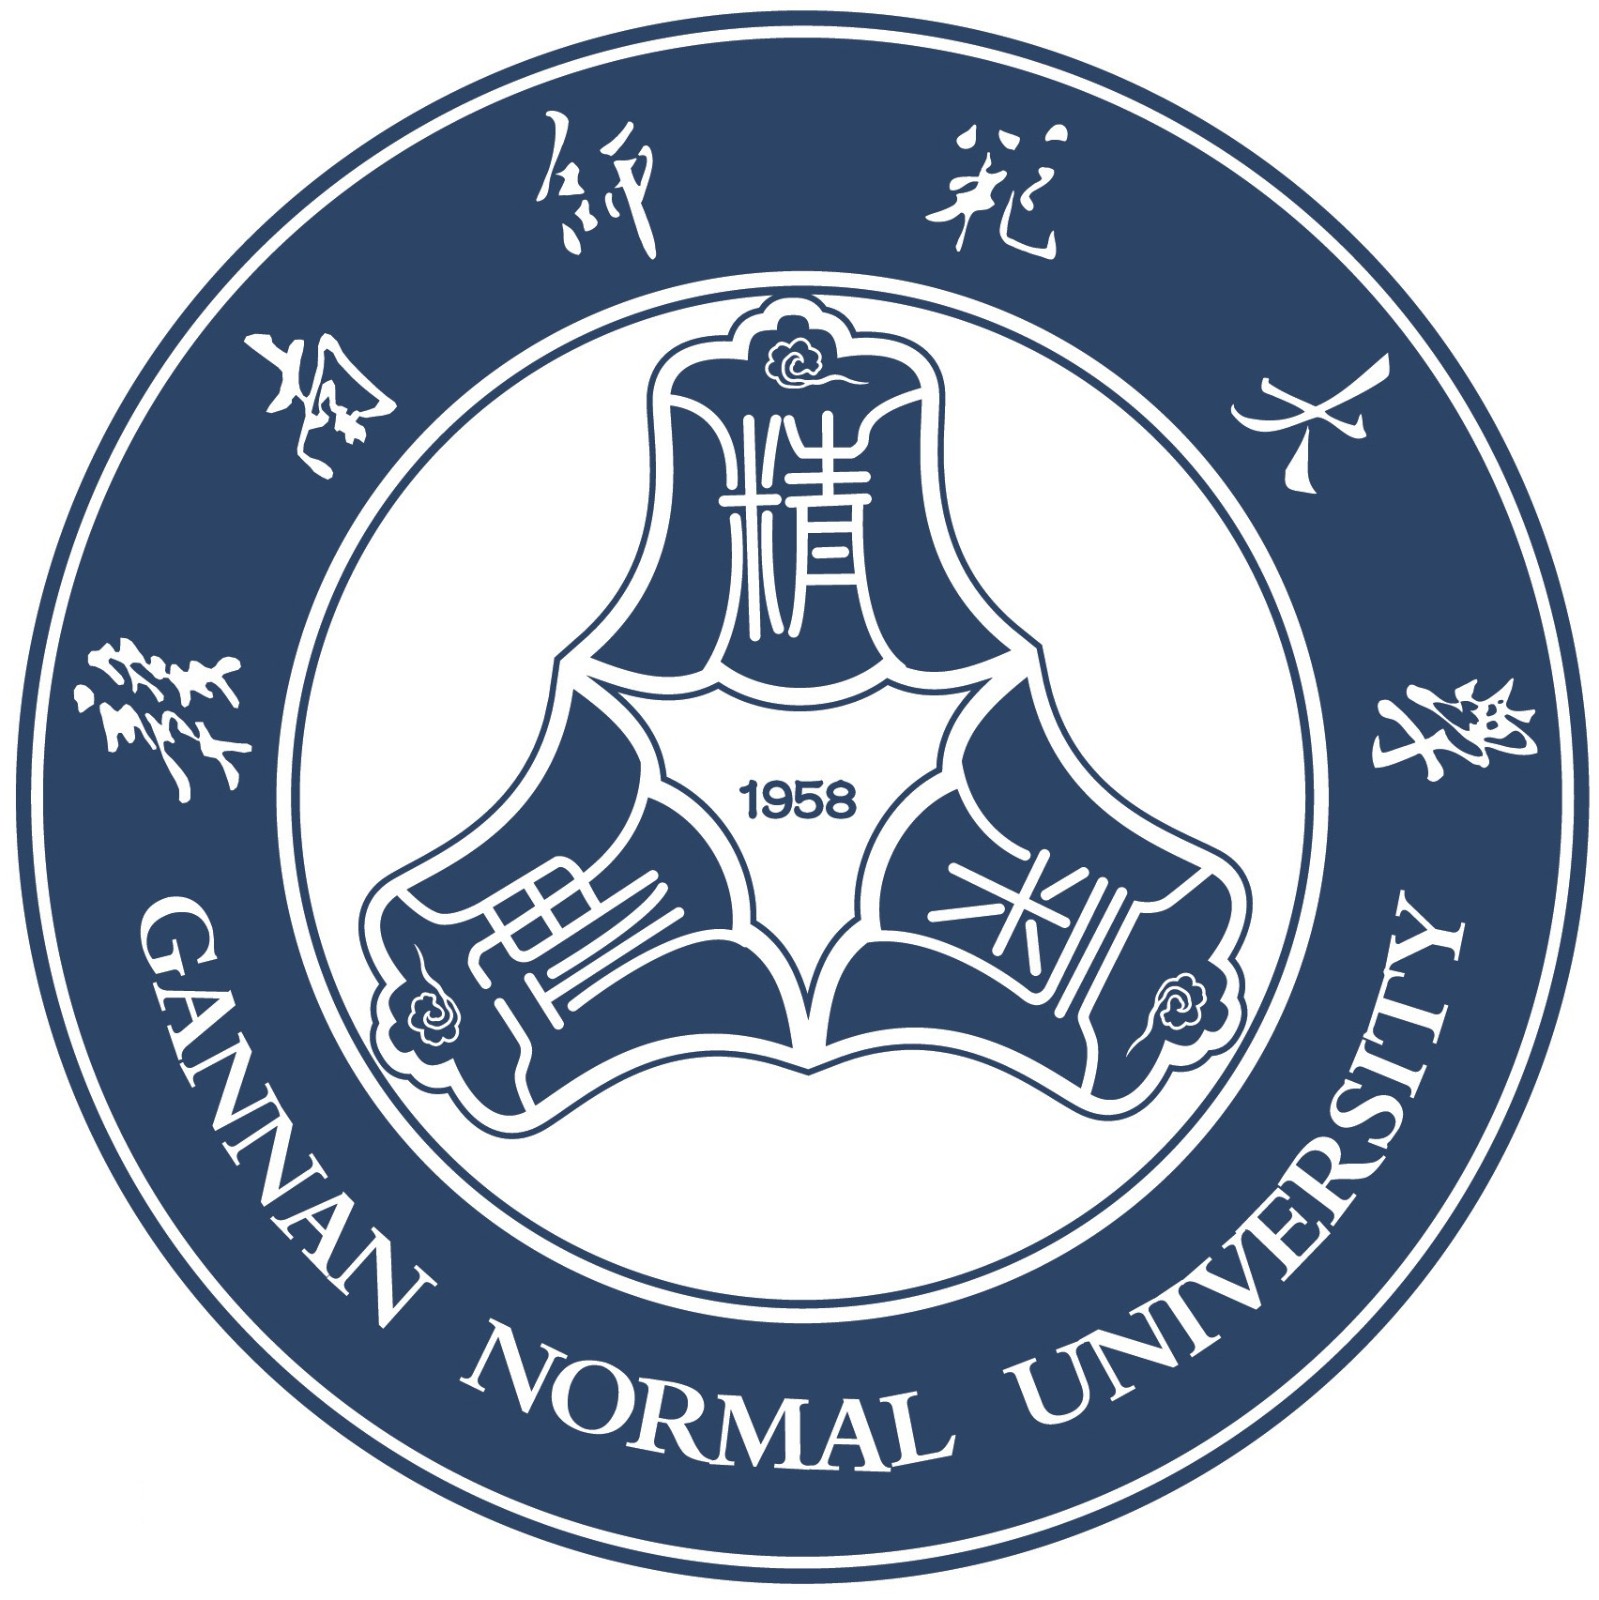 赣南师范大学logo图片